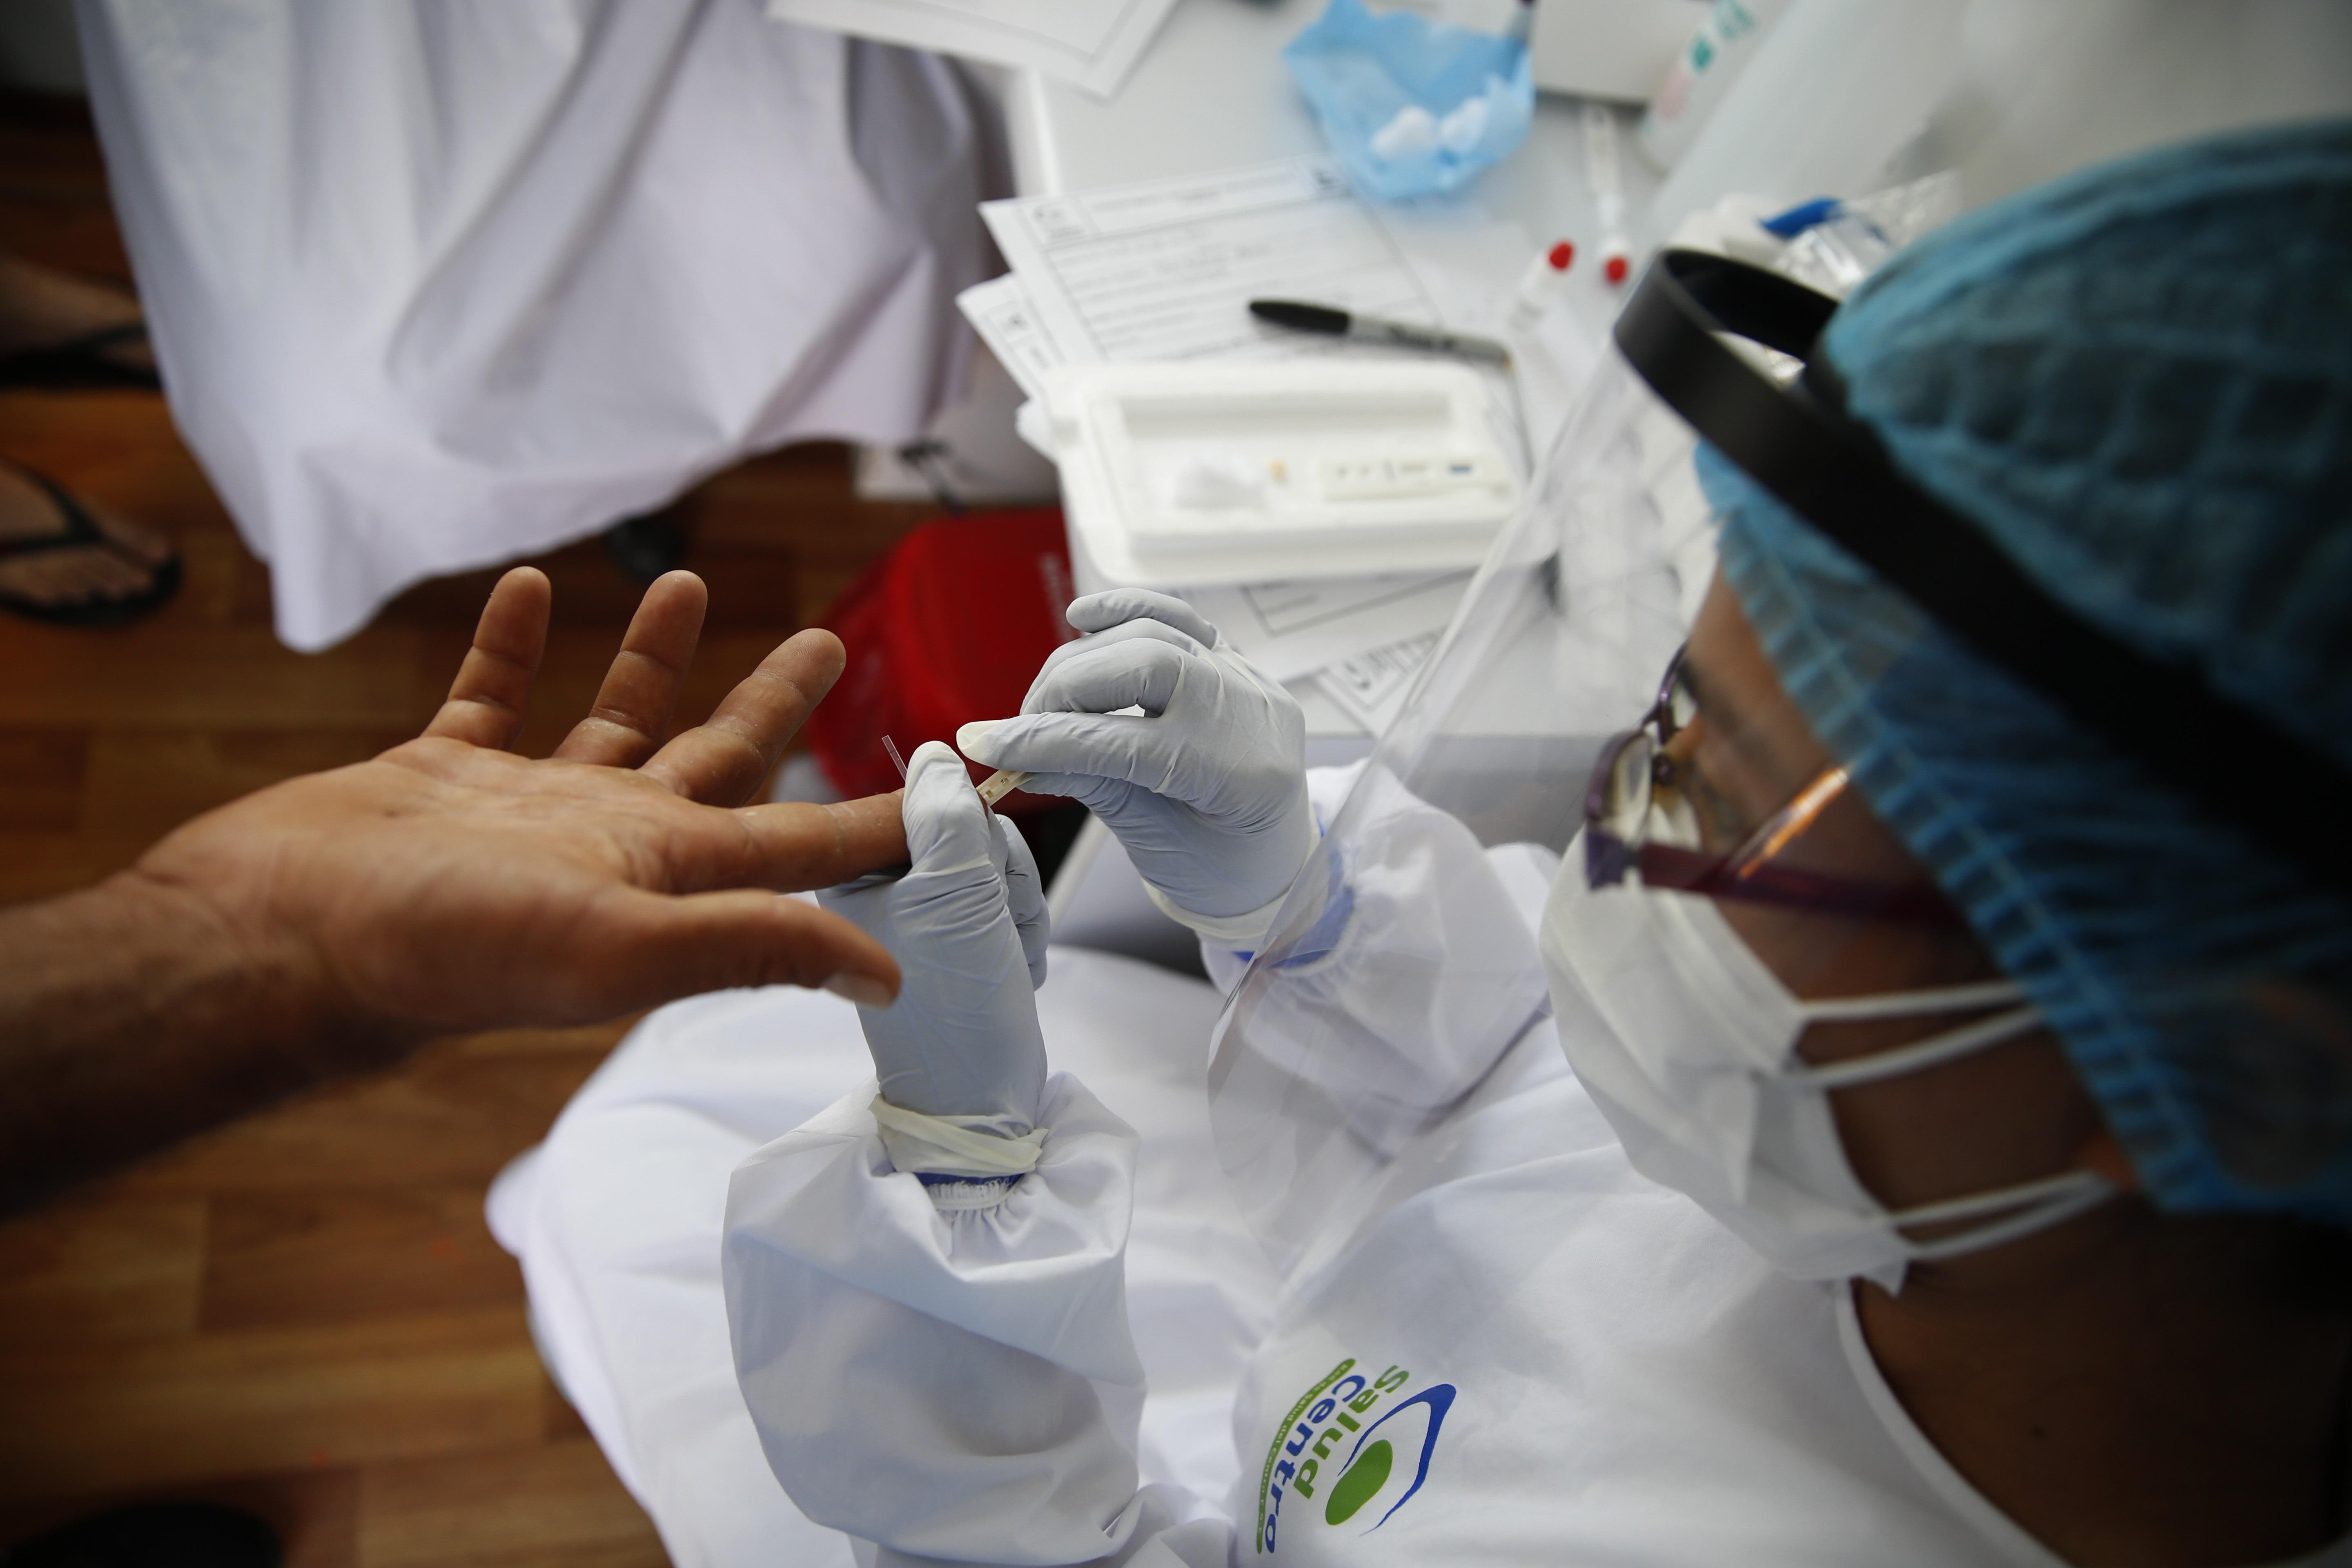 Las pruebas serológicas o de sangre son las menos recomendadas para confirmar la infección del covid-19. (Foto Prensa Libre: EFE)